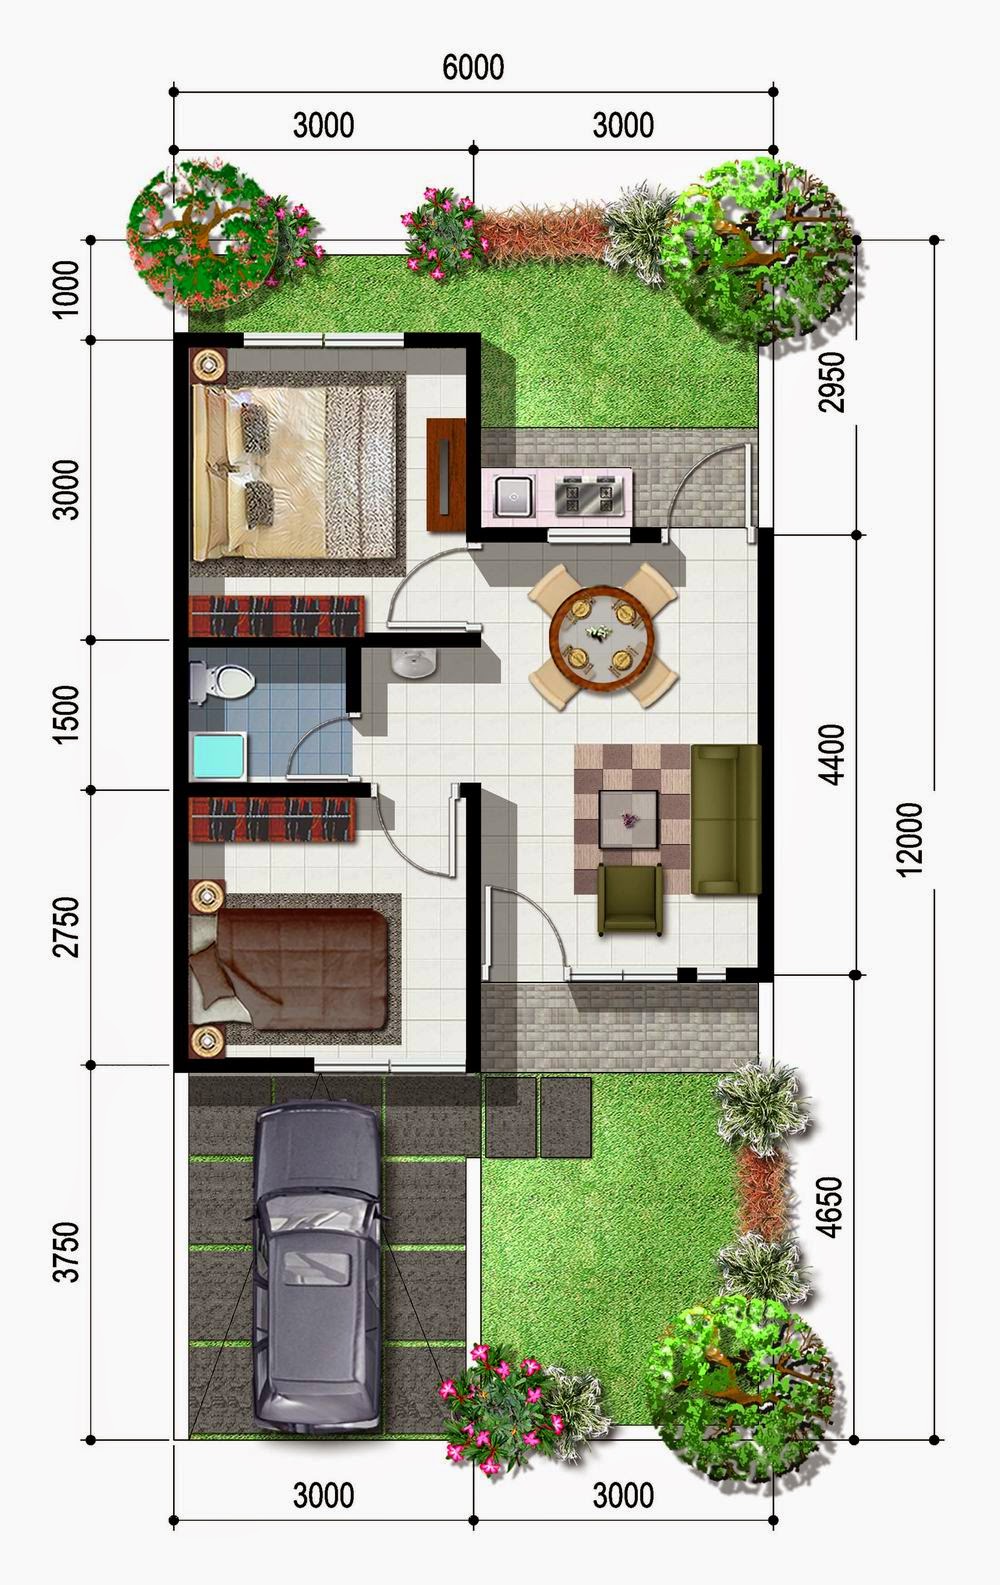 Desain Rumah Minimalis 2 Lantai Type 50 - Gambar Foto ...